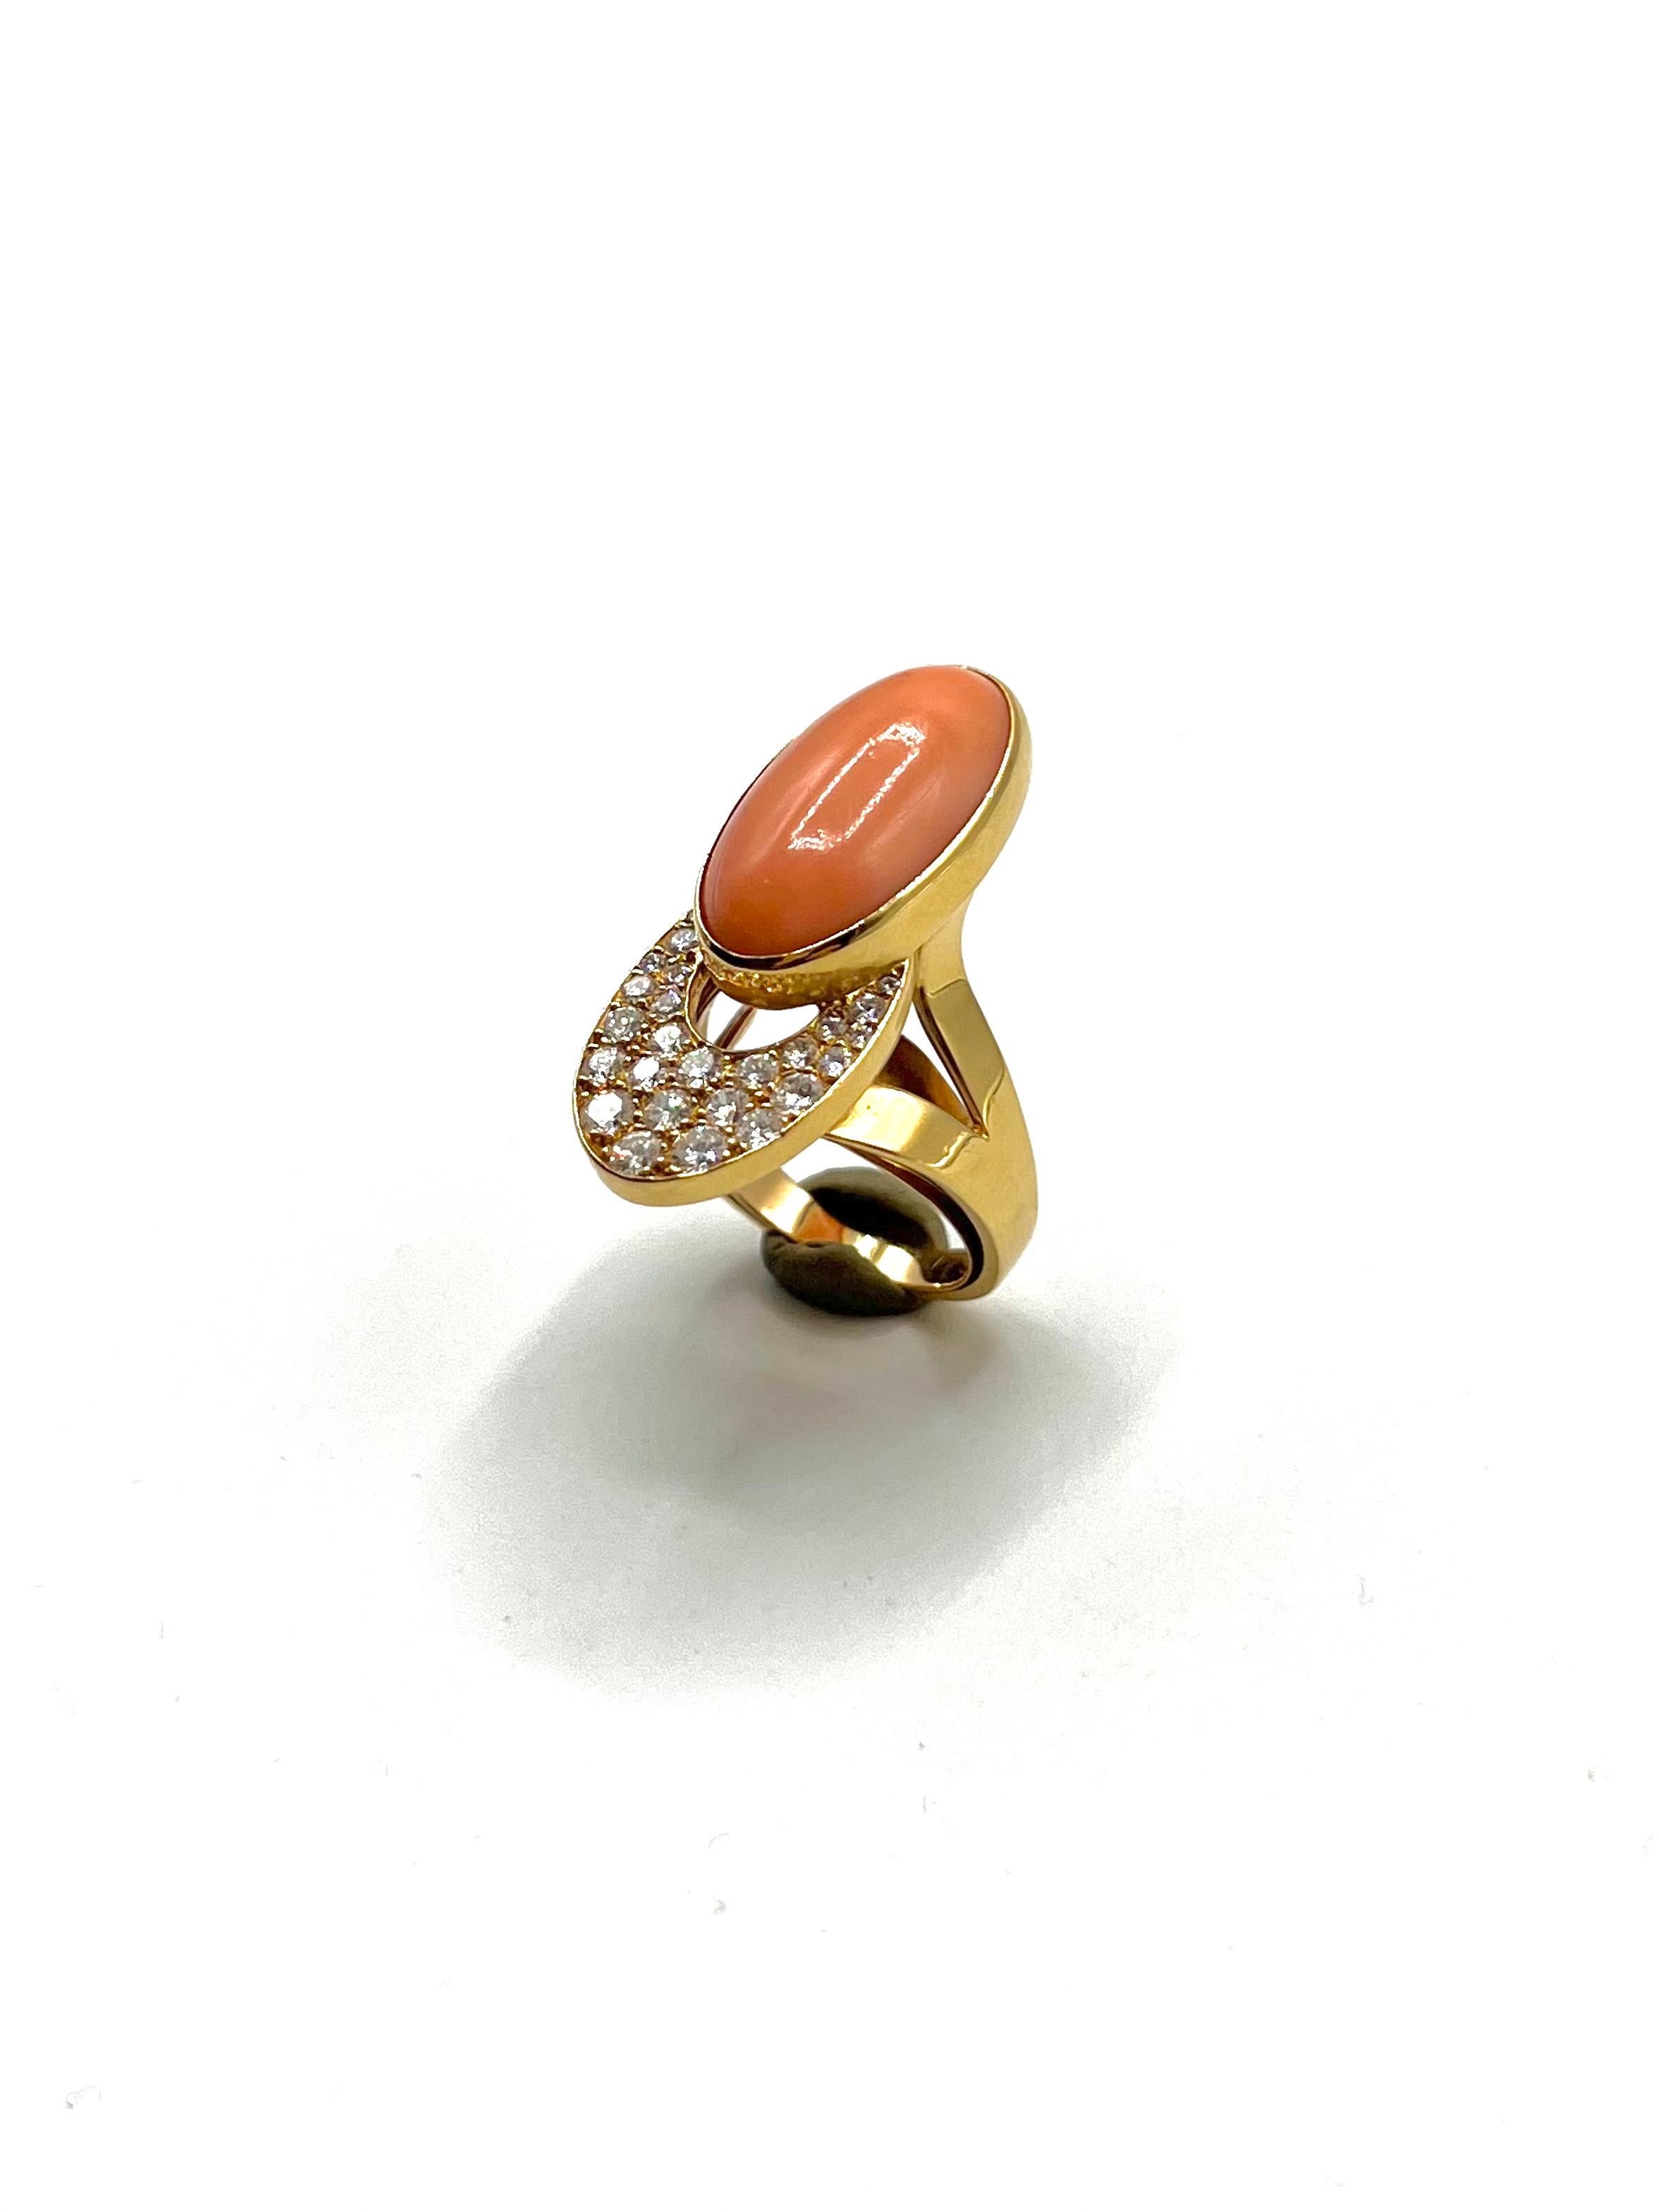 Cartier-Ring aus Gelbgold, besetzt mit einem ovalen Korallencabochon und Diamanten (ca. 1,70 Karat). 
Unterschrieben. 
Sehr starkes Design, hergestellt in den 70er Jahren
11,25 g